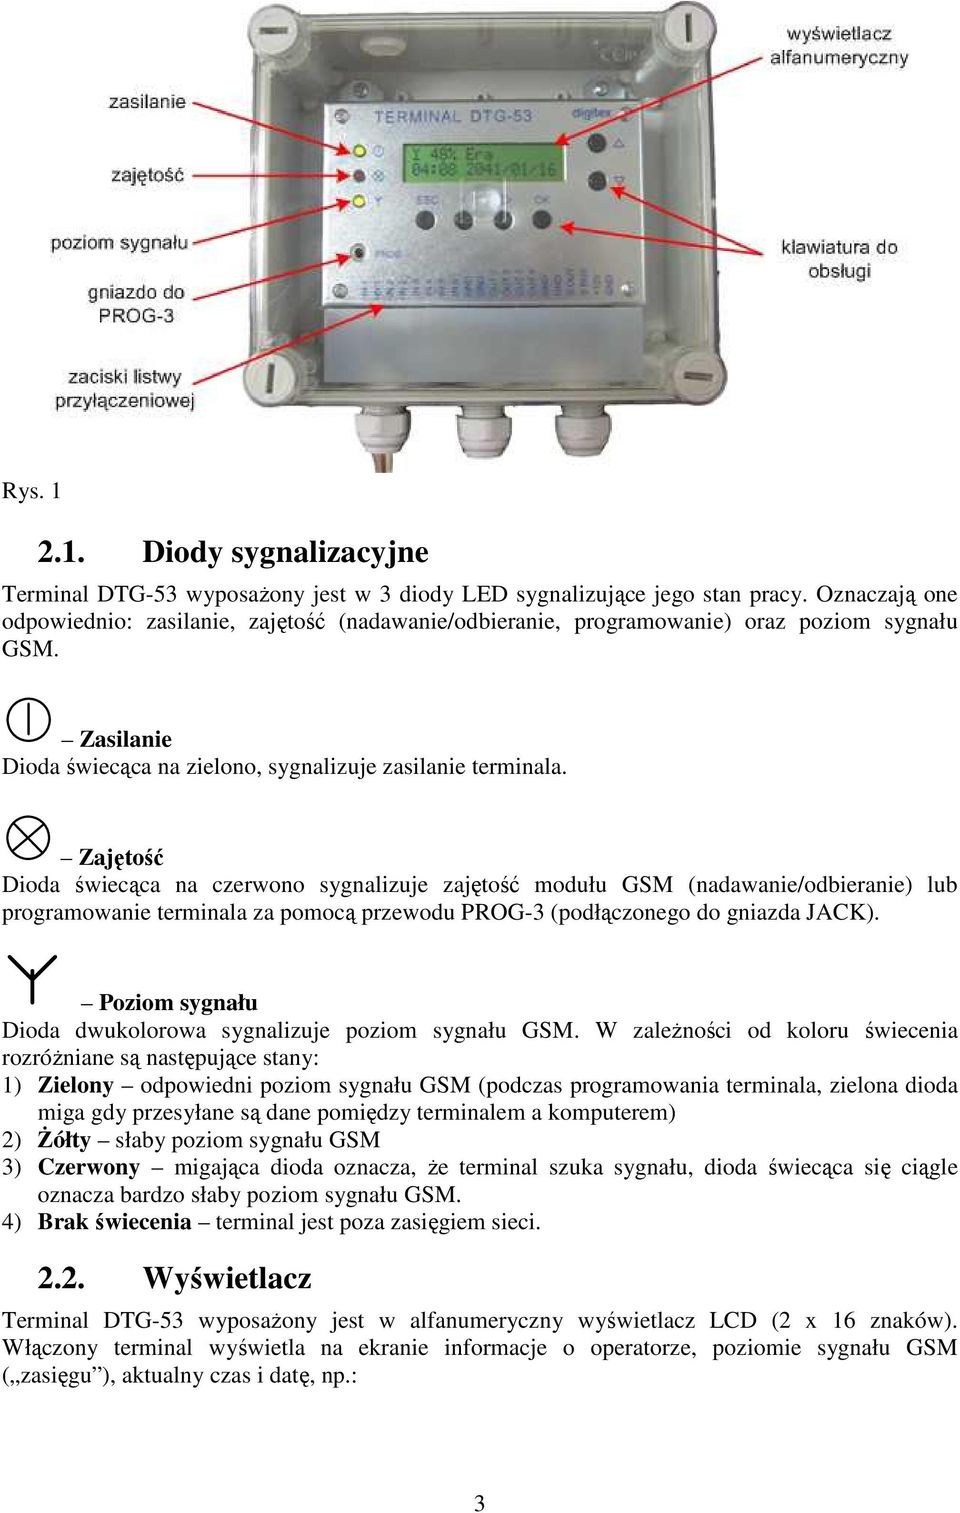 Zajętość Dioda świecąca na czerwono sygnalizuje zajętość modułu GSM (nadawanie/odbieranie) lub programowanie terminala za pomocą przewodu PROG-3 (podłączonego do gniazda JACK).